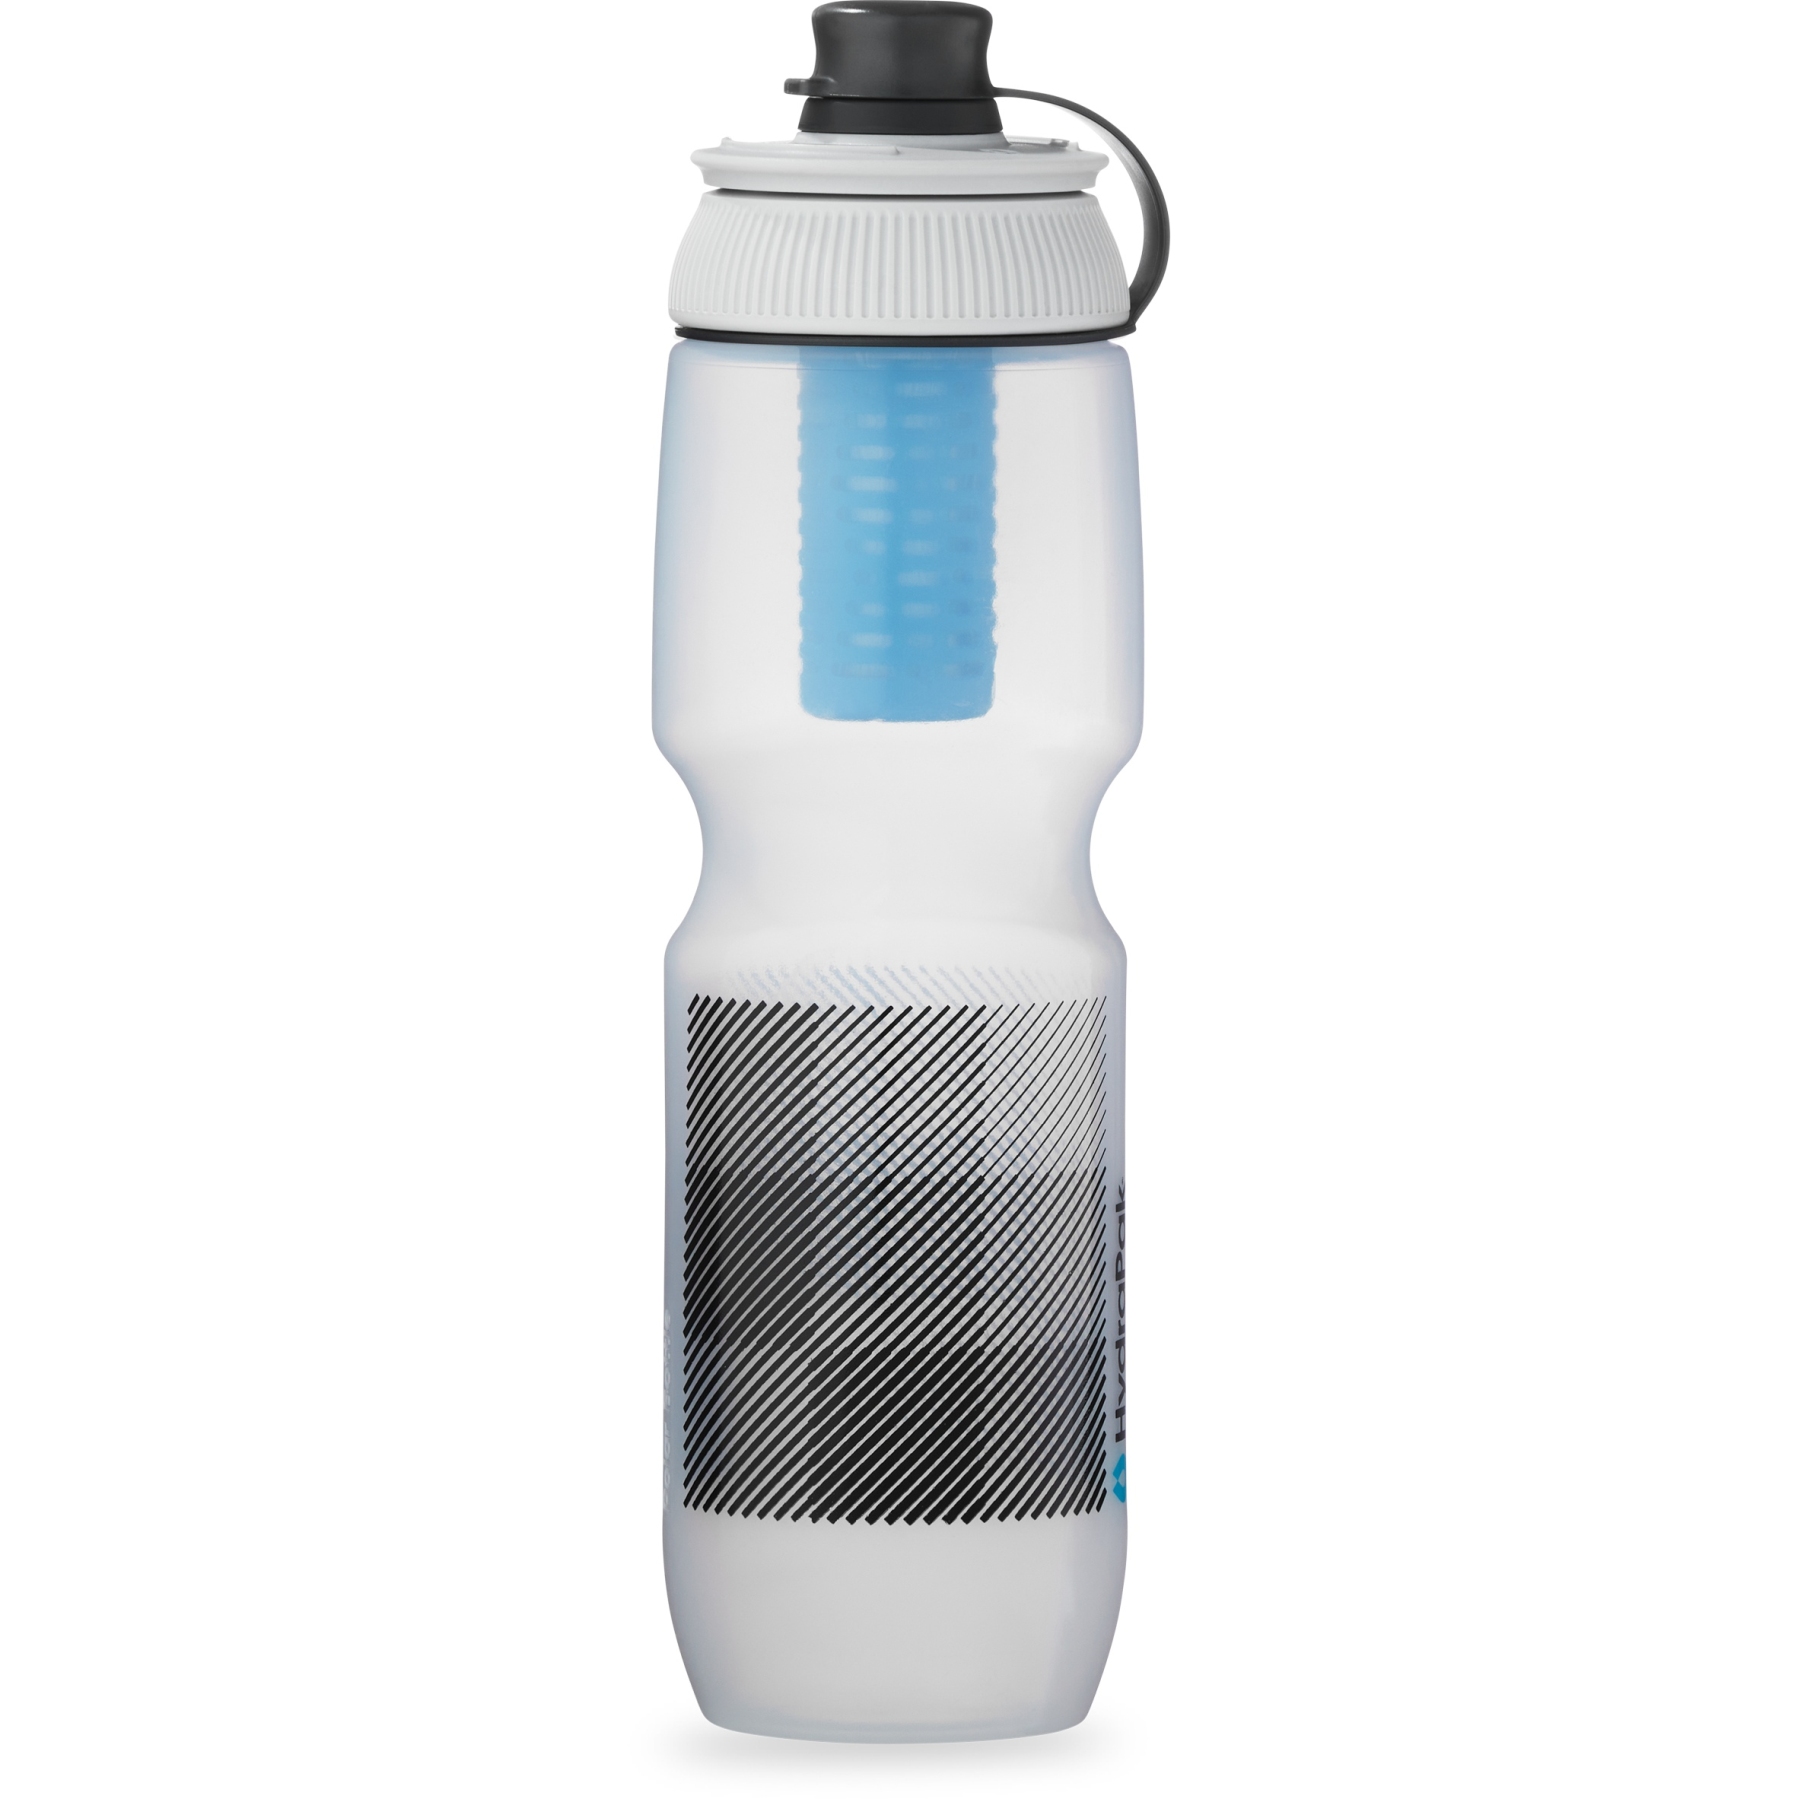 Produktbild von Hydrapak Breakaway + Filter Cap Trinkflasche - 880 ml - charcoal/silver/blue